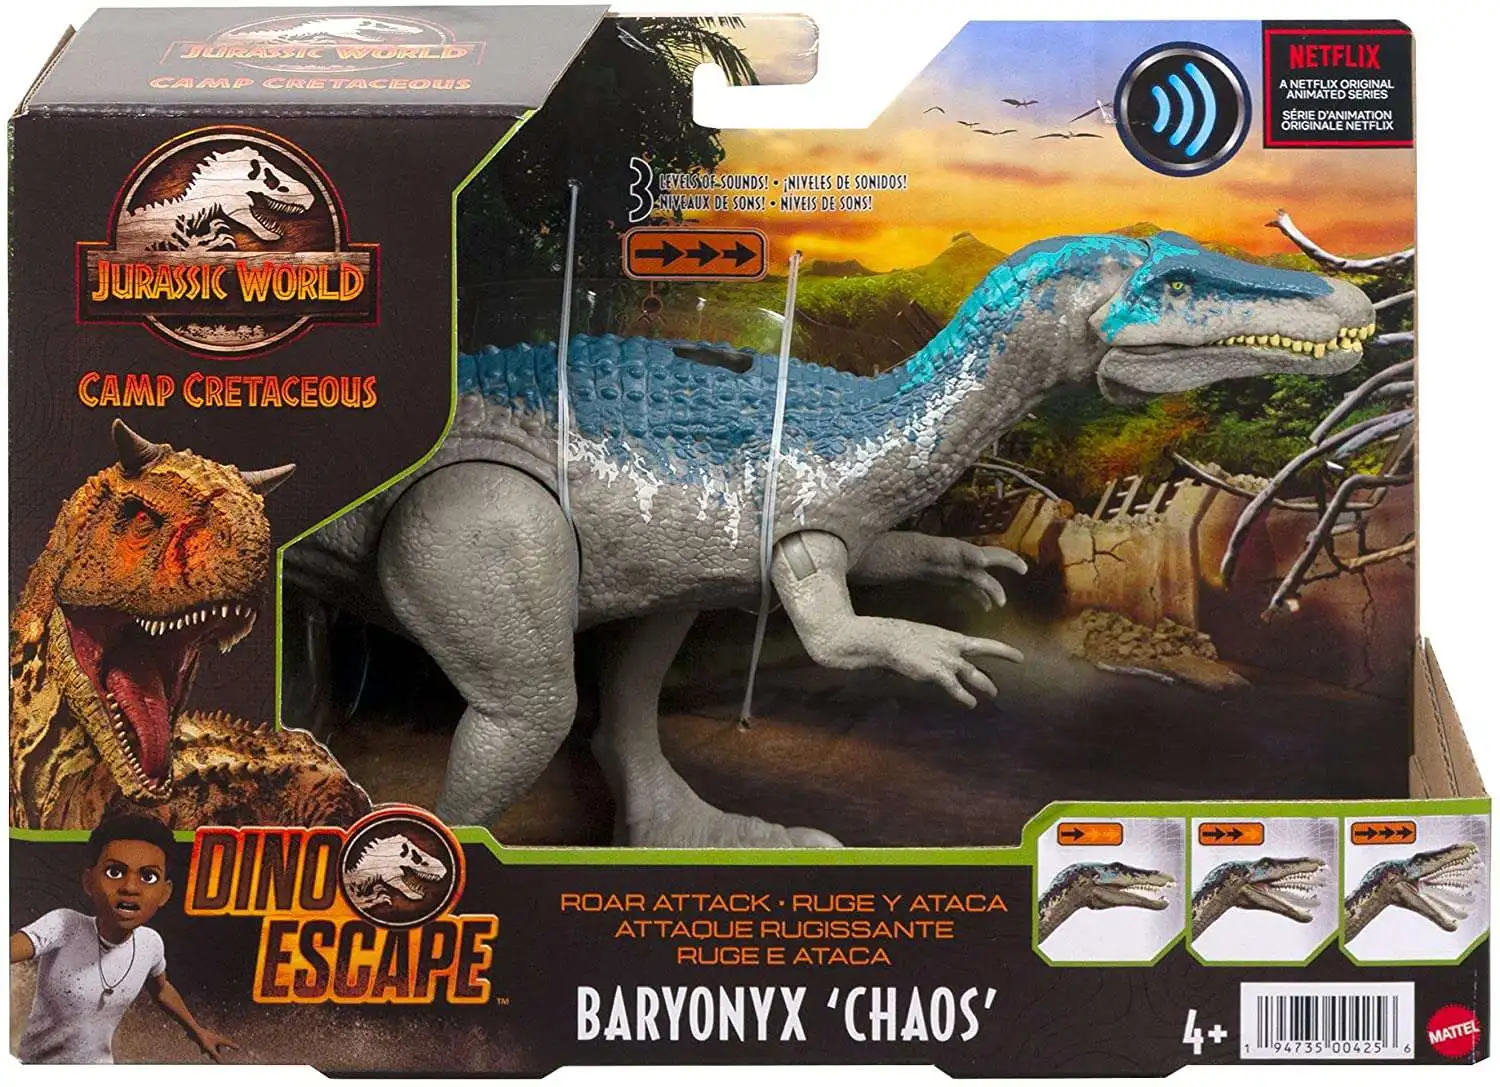 Dinosaur Escape, Board Game